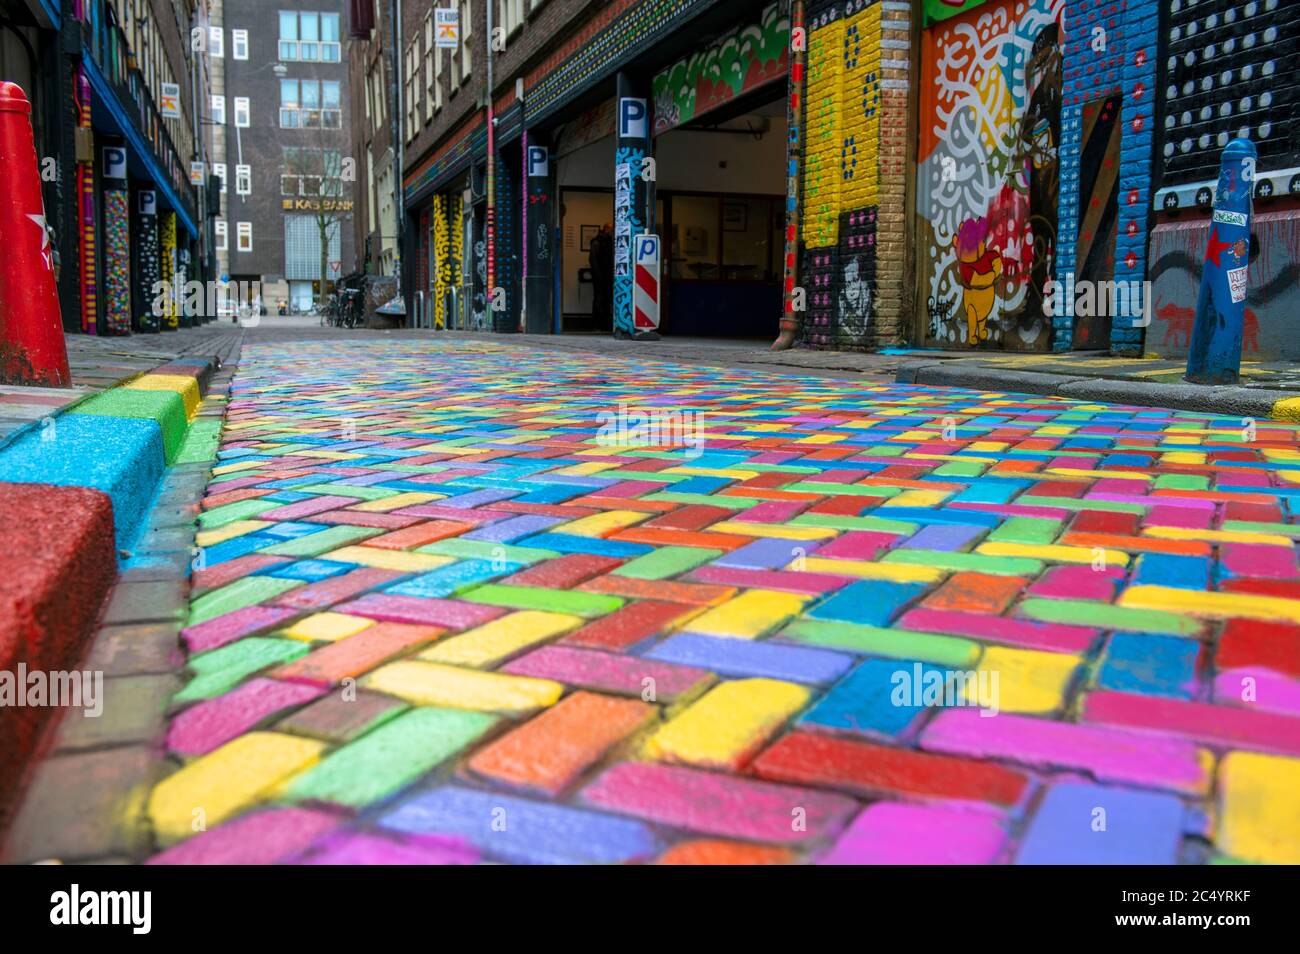 Bunte Pflastersteine auf einer Straße im Zentrum von Amsterdam, Niederlande  Stockfotografie - Alamy